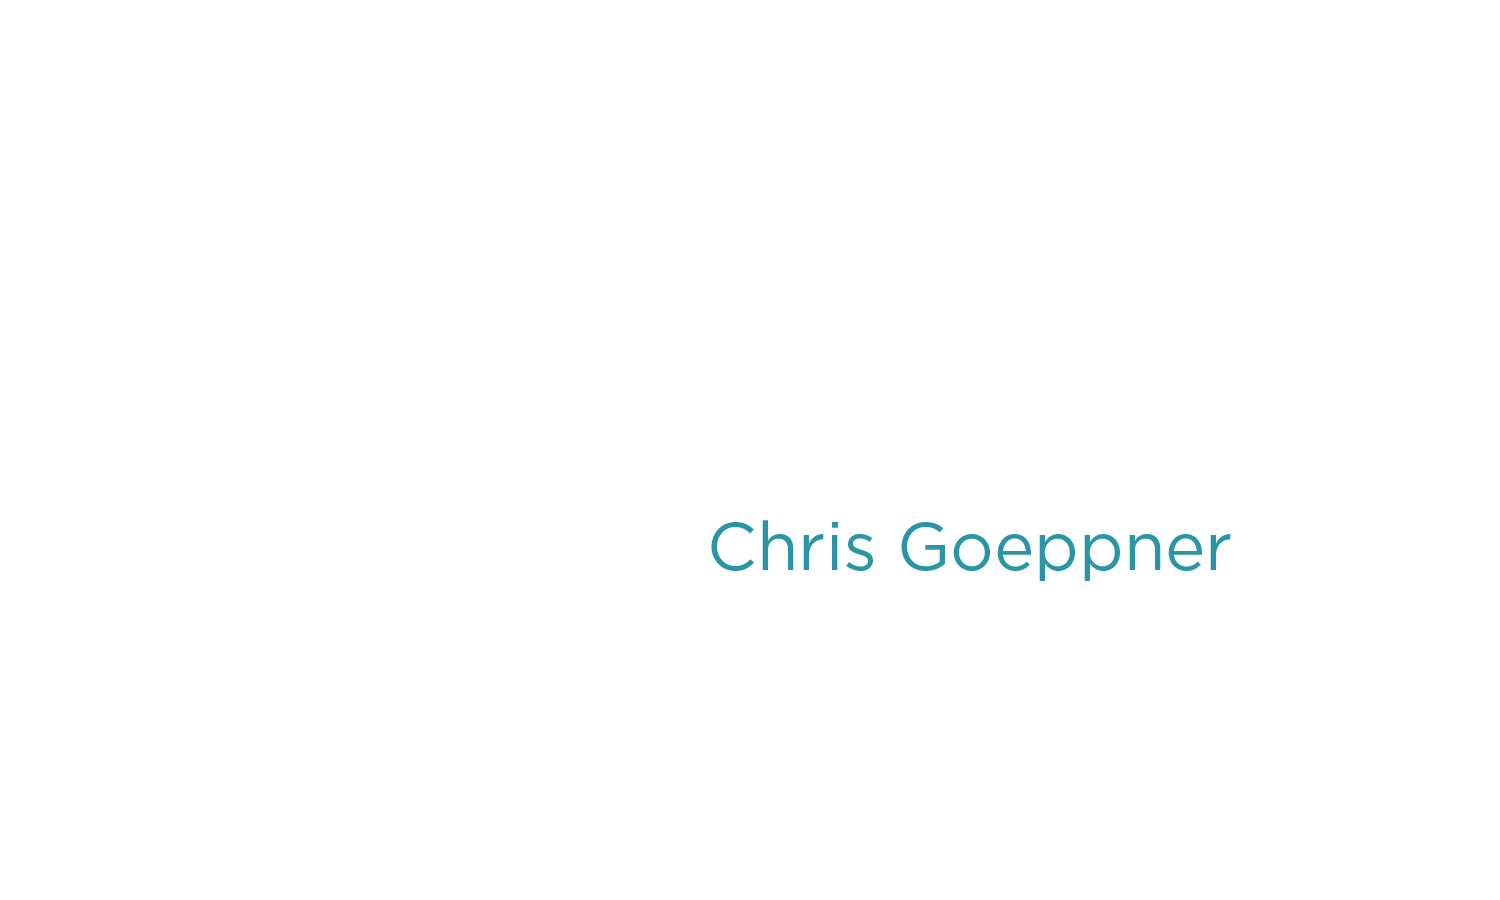 Chris Goeppner - 5Q-Title-05-Chris-Goeppner-01